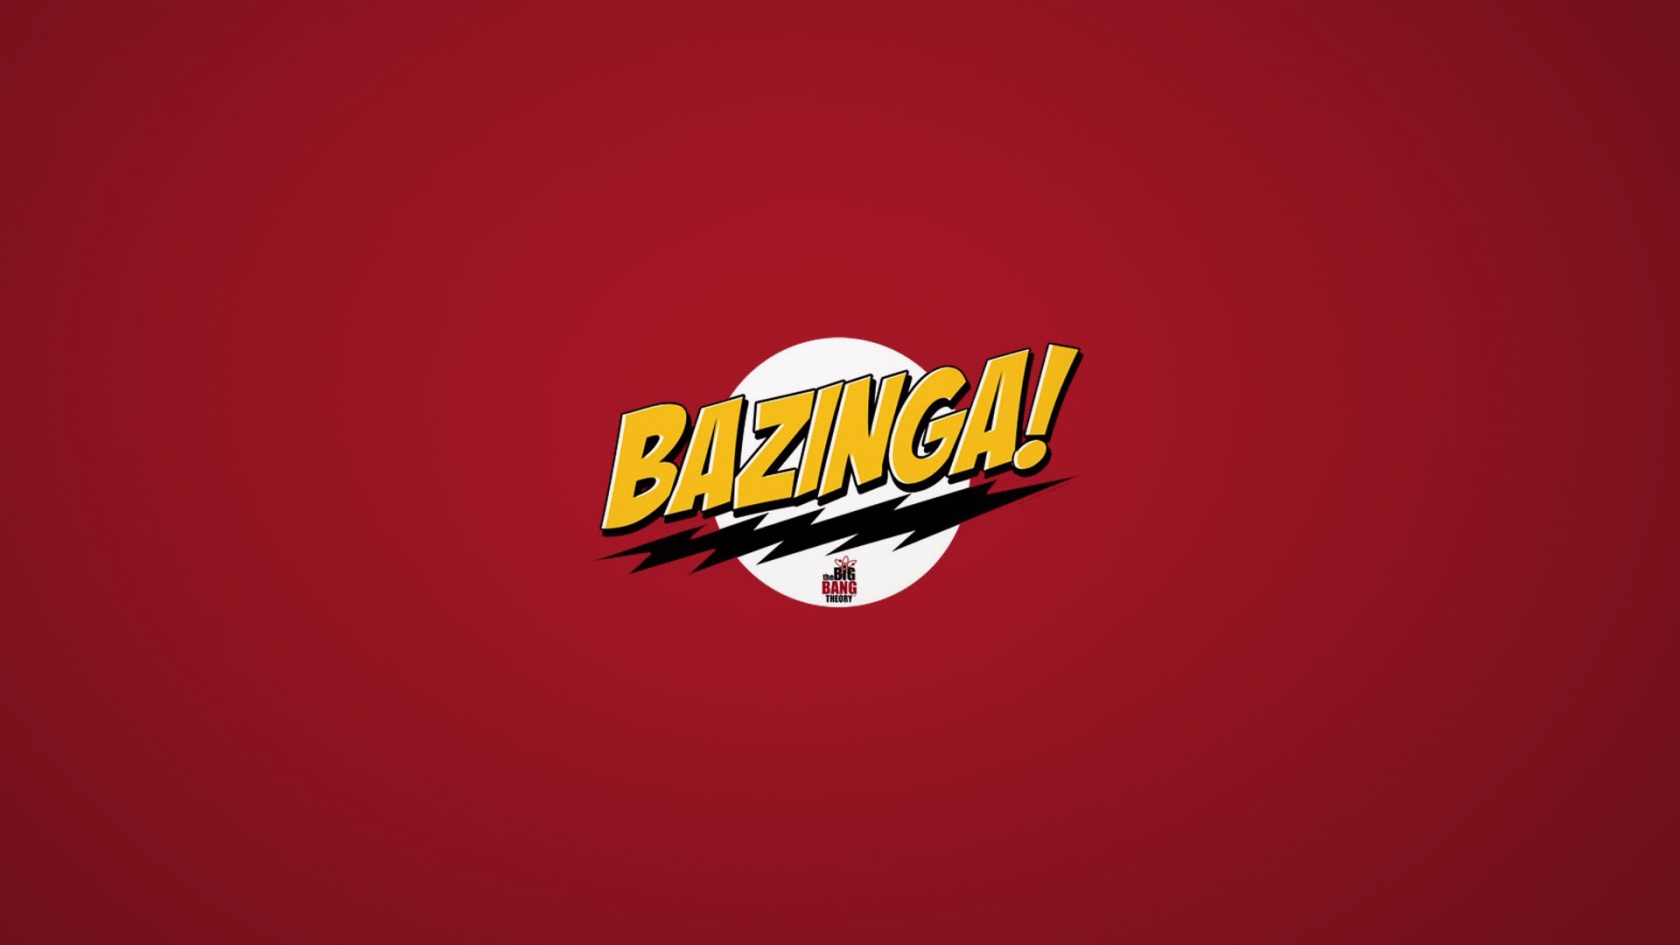 The Big Bang Theory Bazinga for 1680 x 945 HDTV resolution